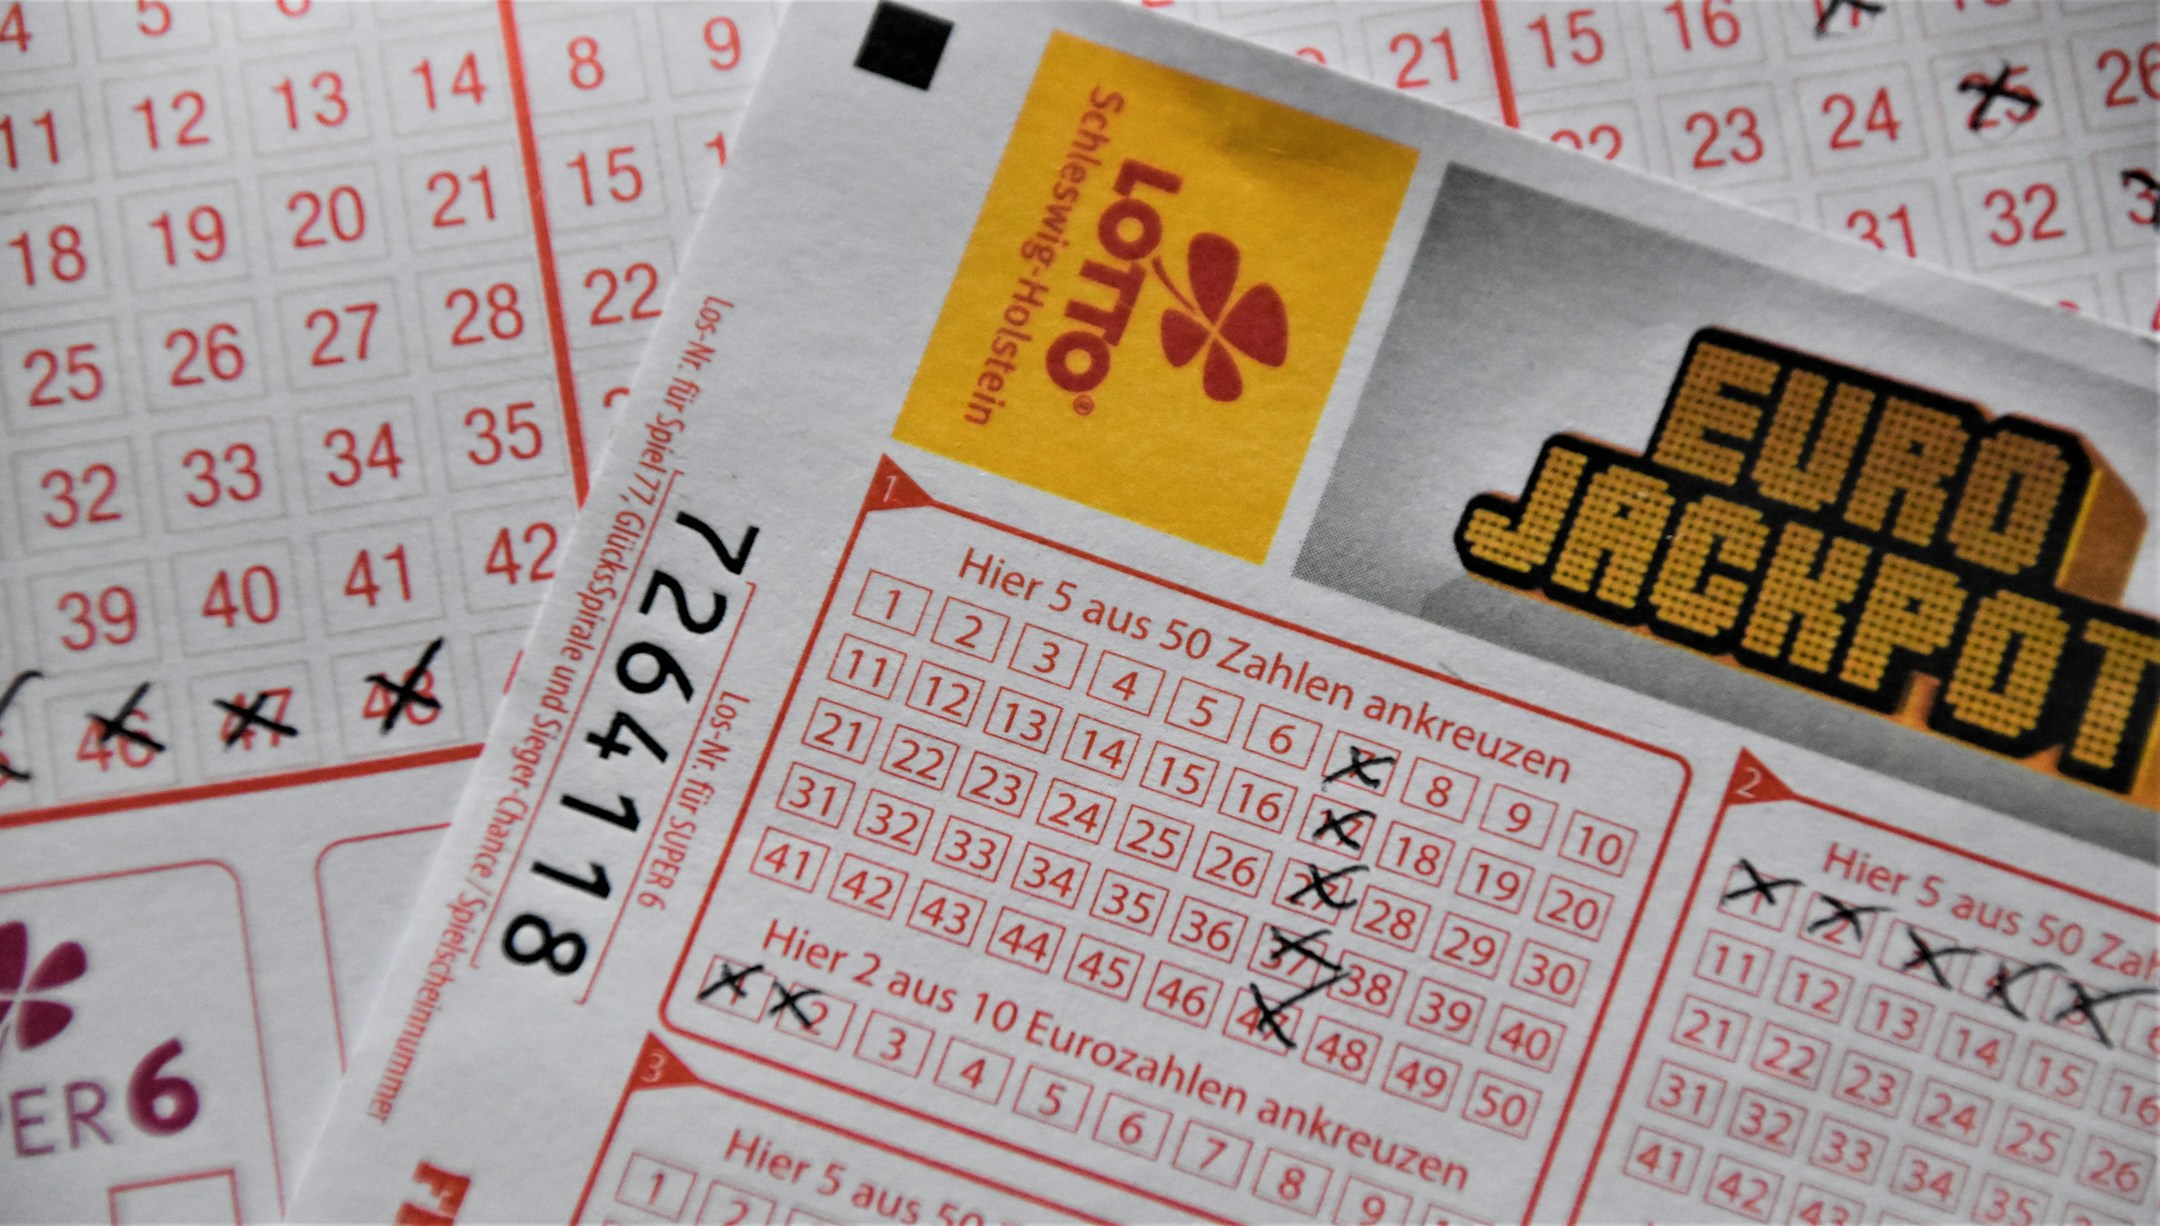 Descubra qual é considerada a loteria mais fácil de ganhar